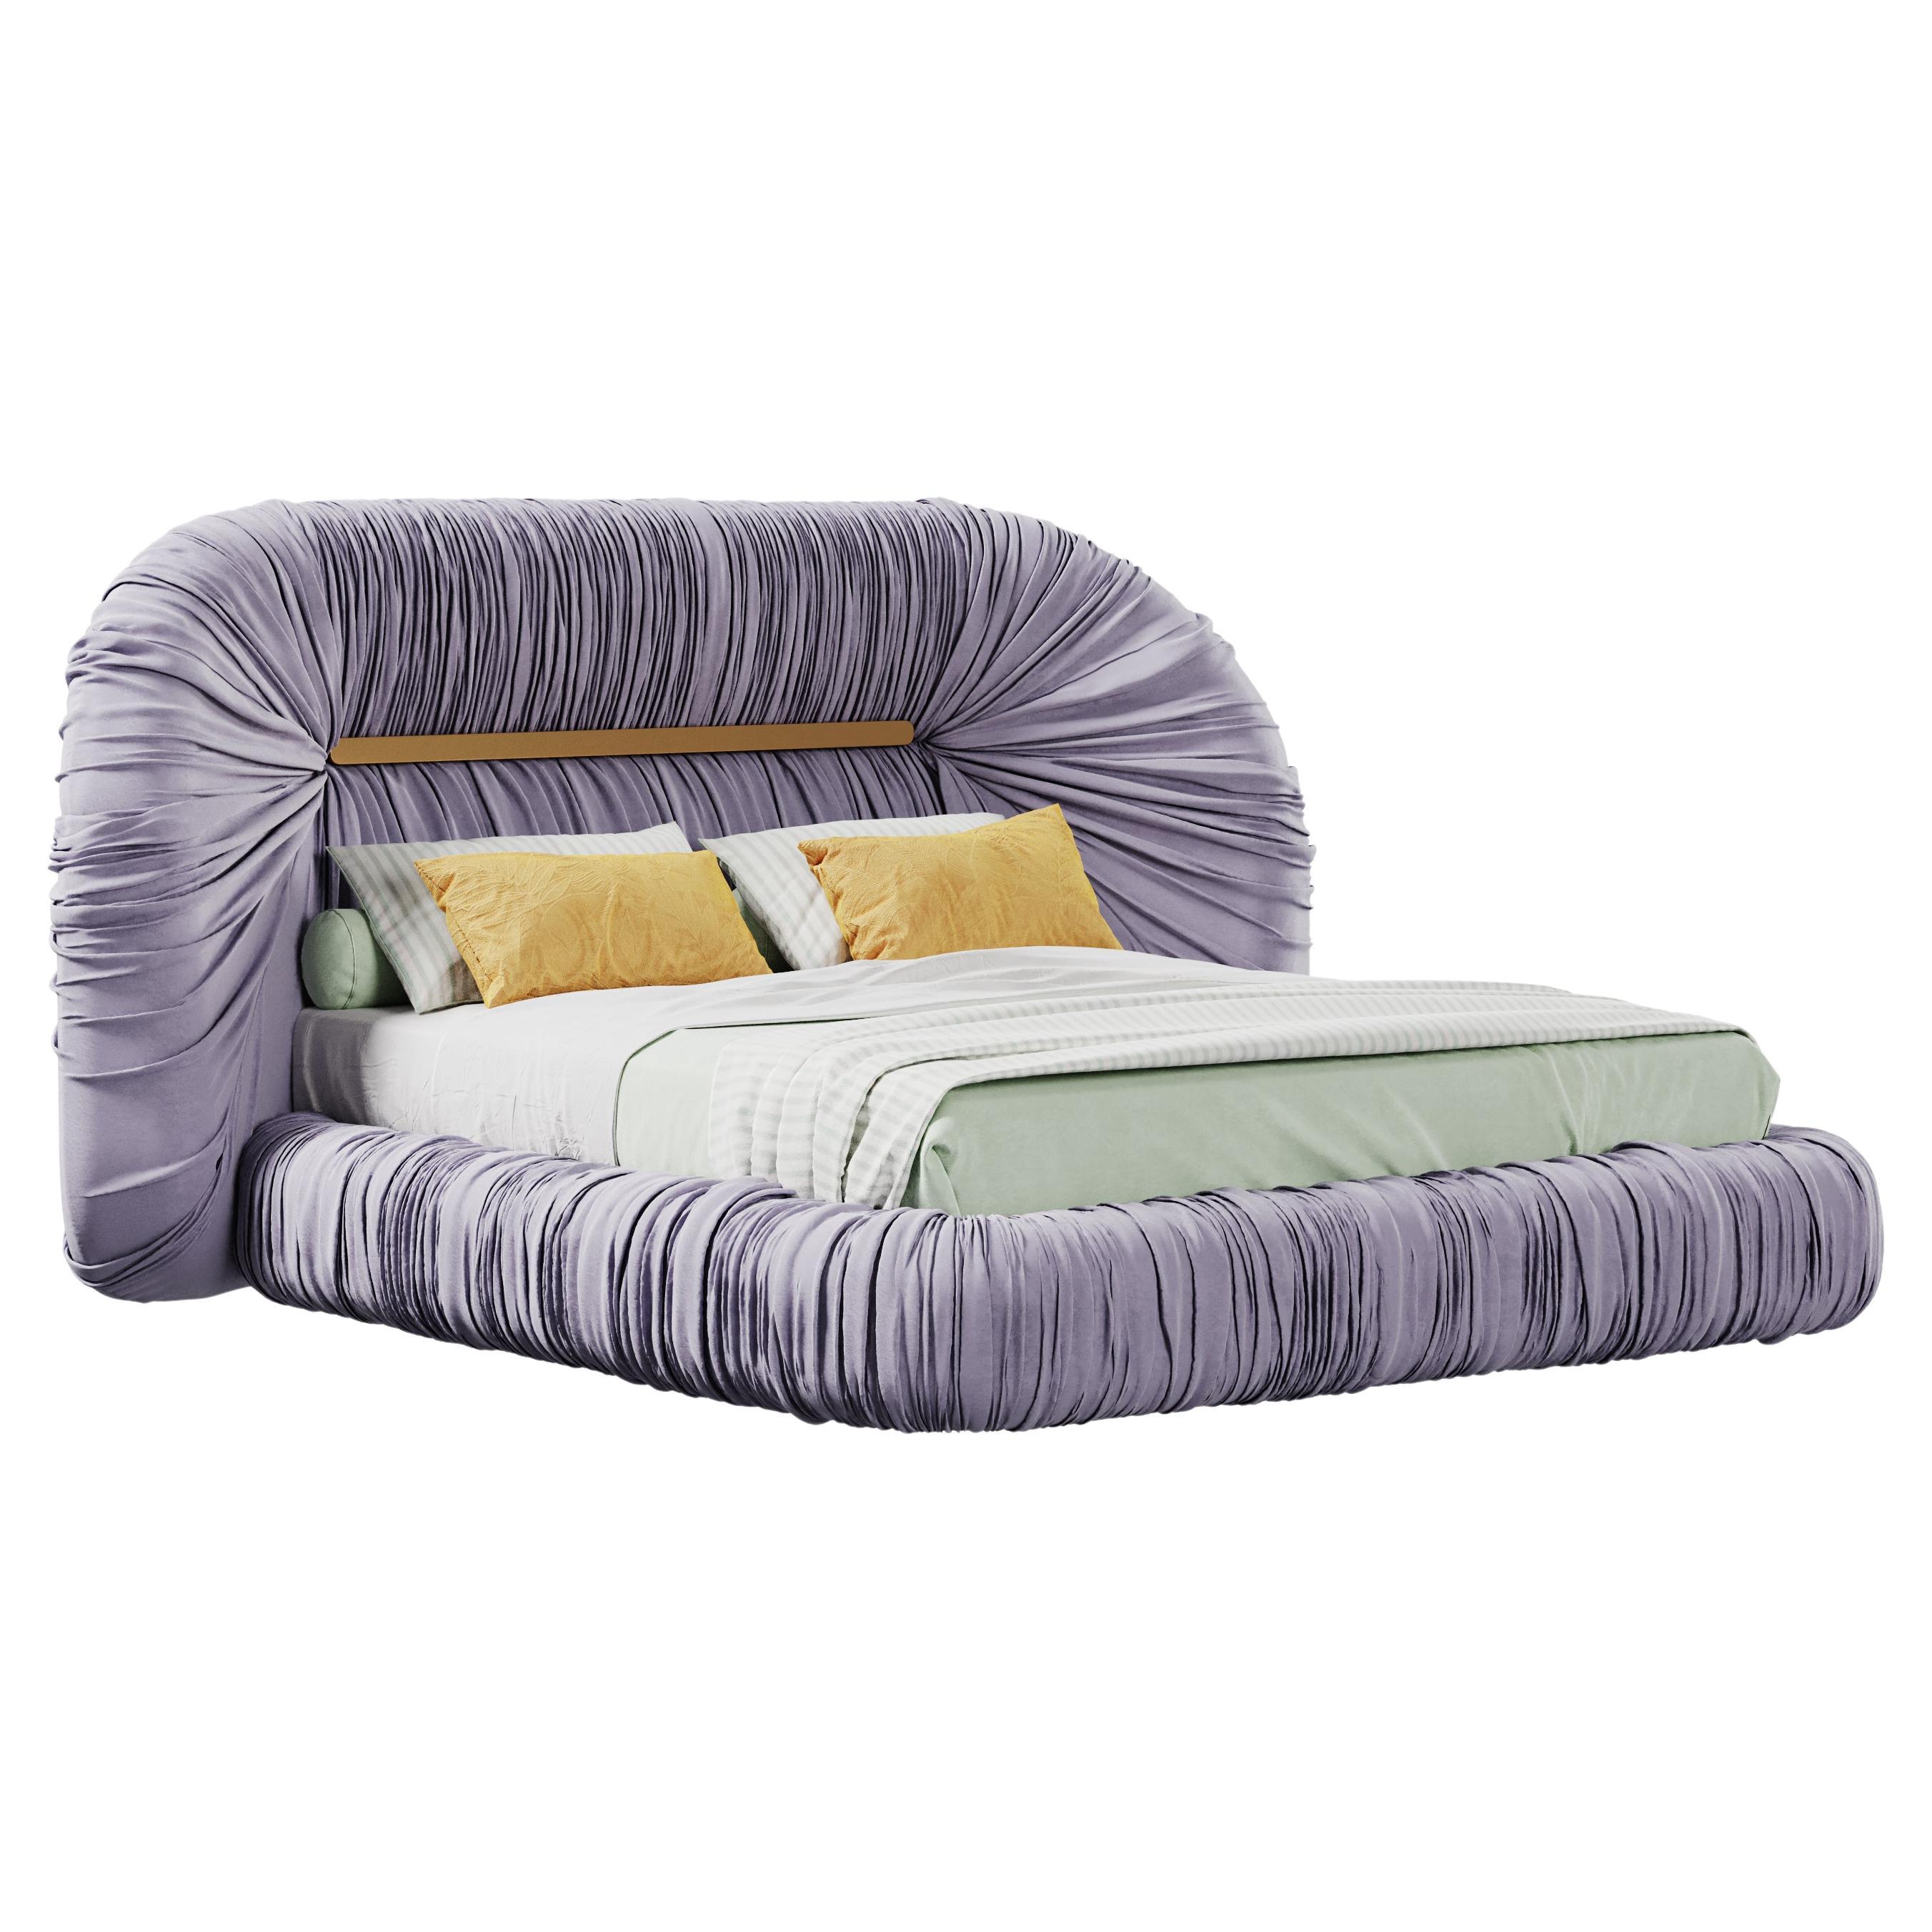 Mid-Century Modern-Inspired Tammi Bed Velvet by Ottiu